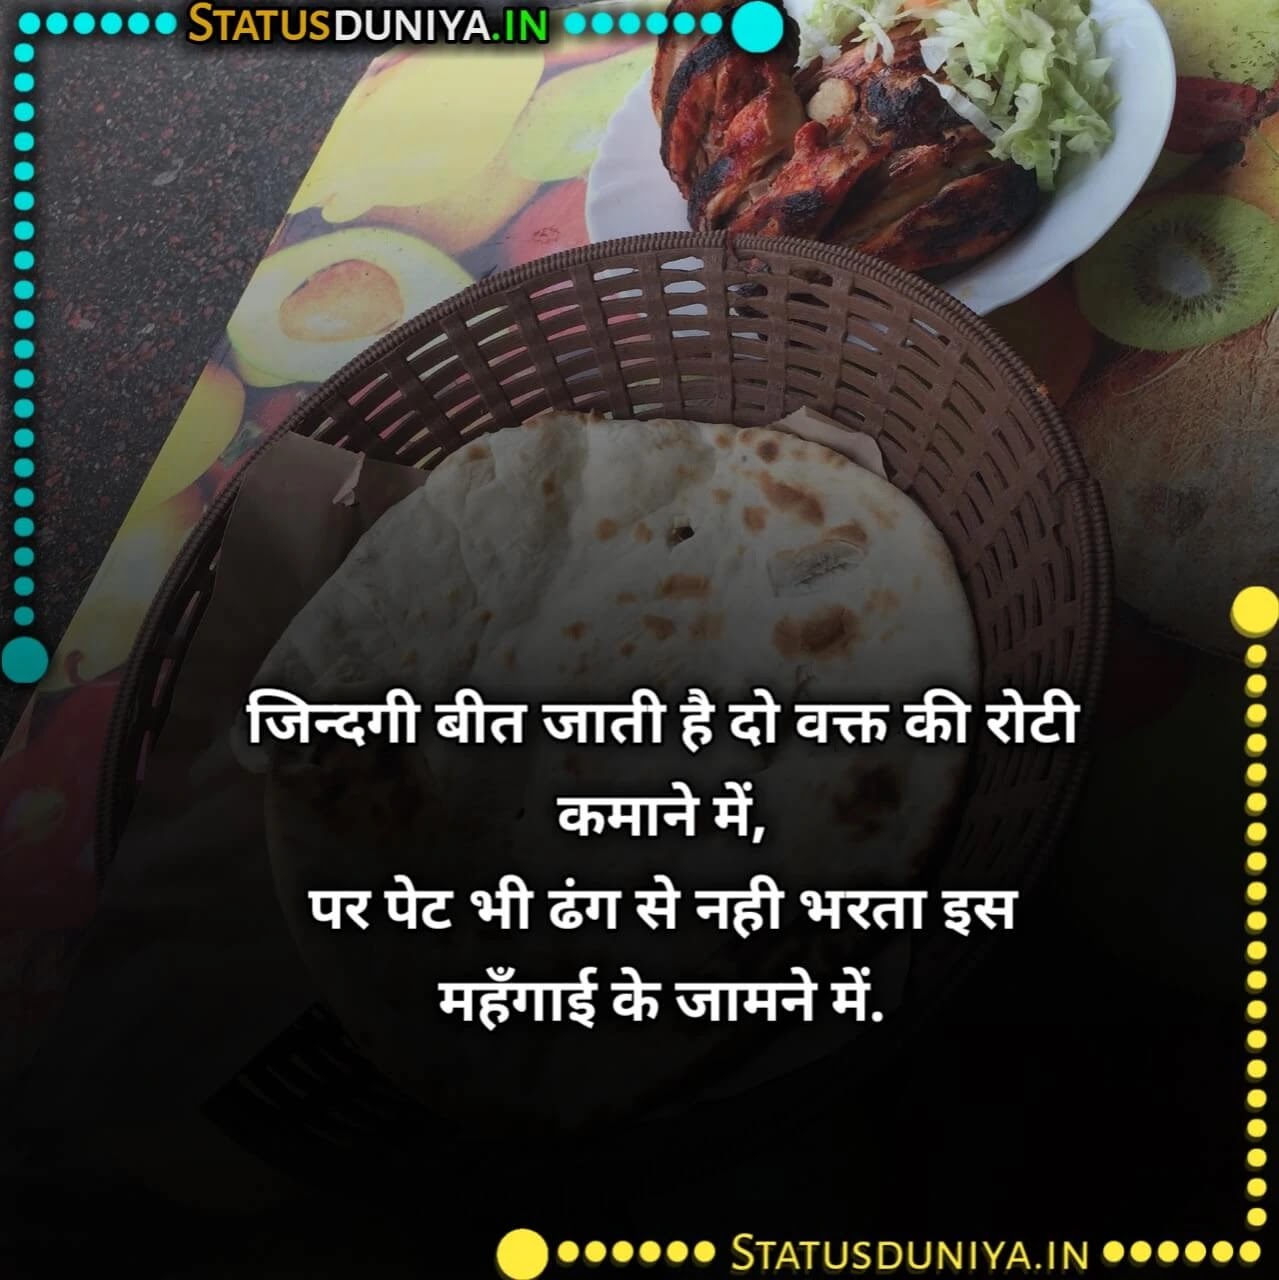 रोटी पर शायरी
Roti Shayari Status In Hindi
रोटी पर शायरी
roti quotes in hindi
roti status
दो वक्त की रोटी शायरी
garib ki roti
दाल रोटी शायरी
do waqt ki roti shayari